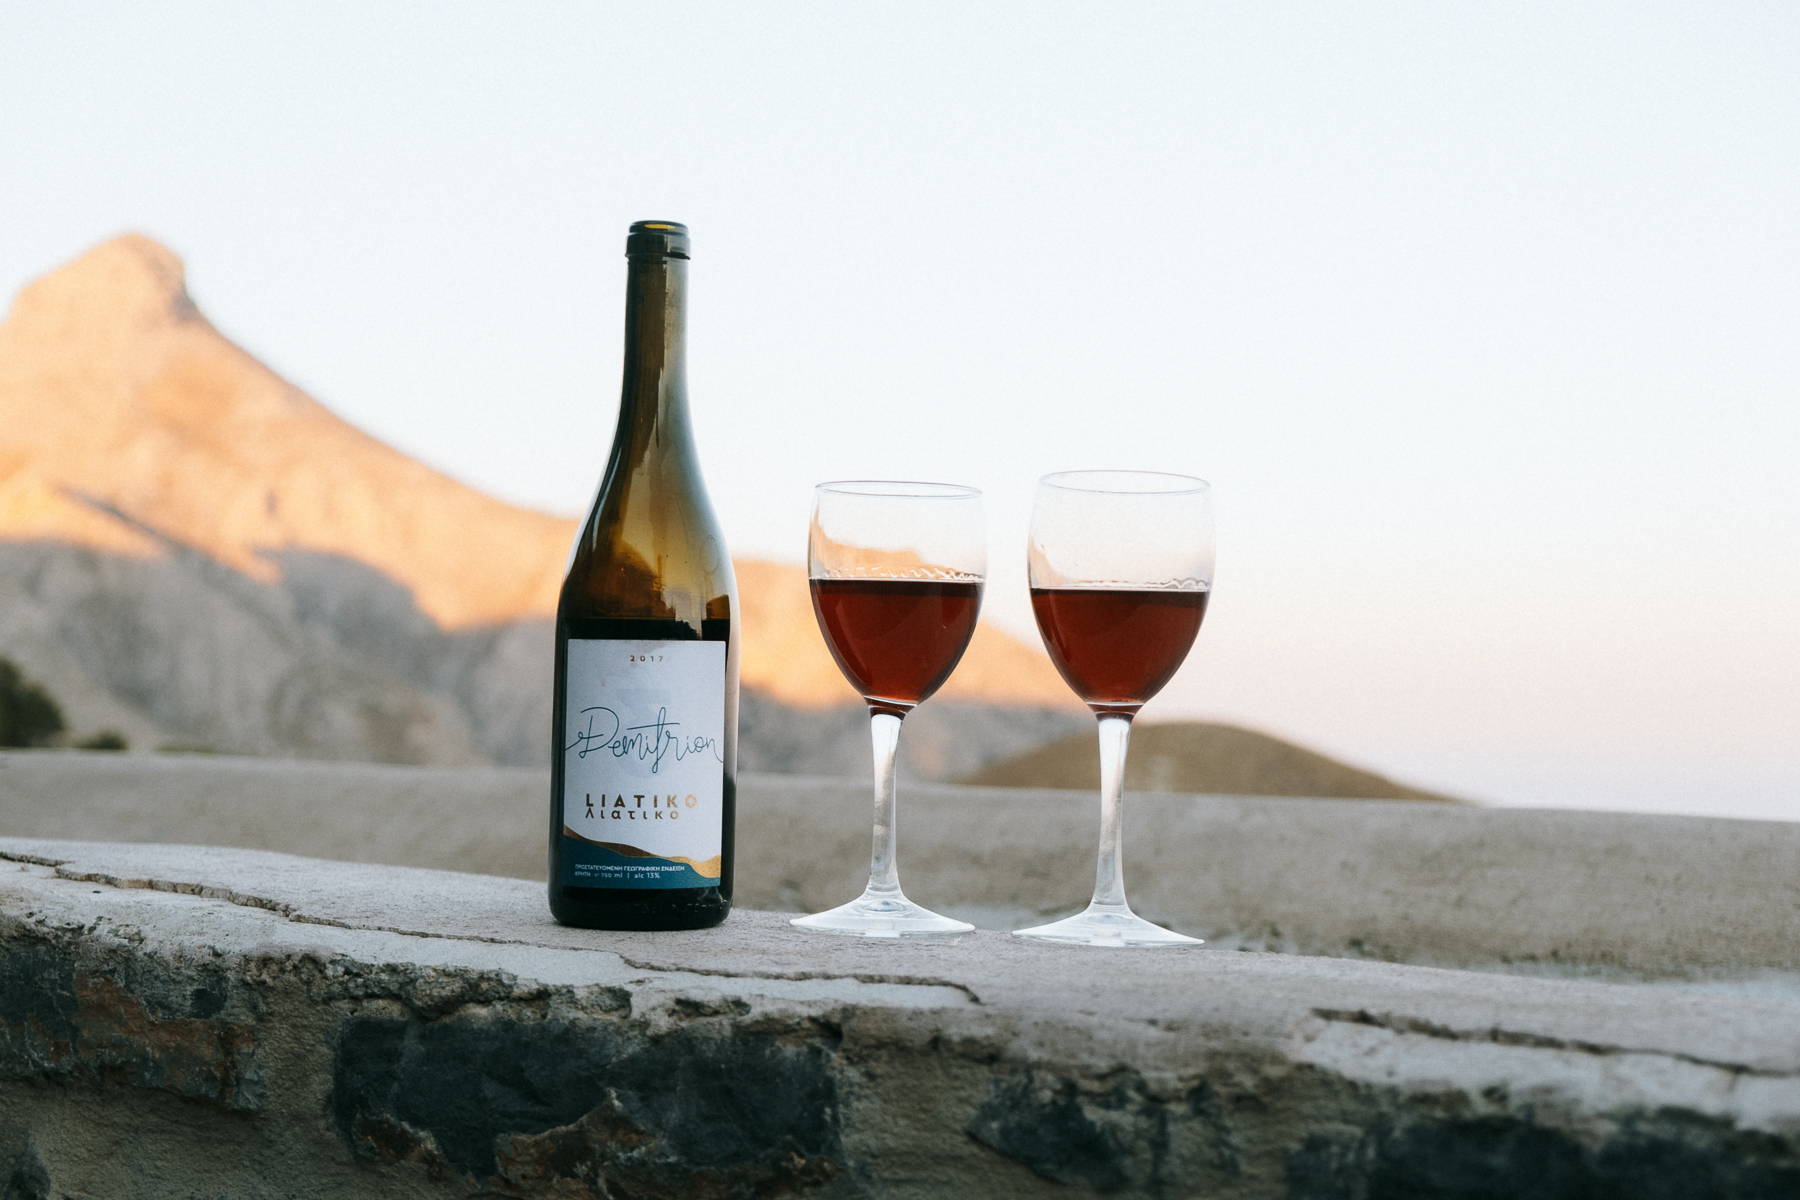 Liatiko wine crete